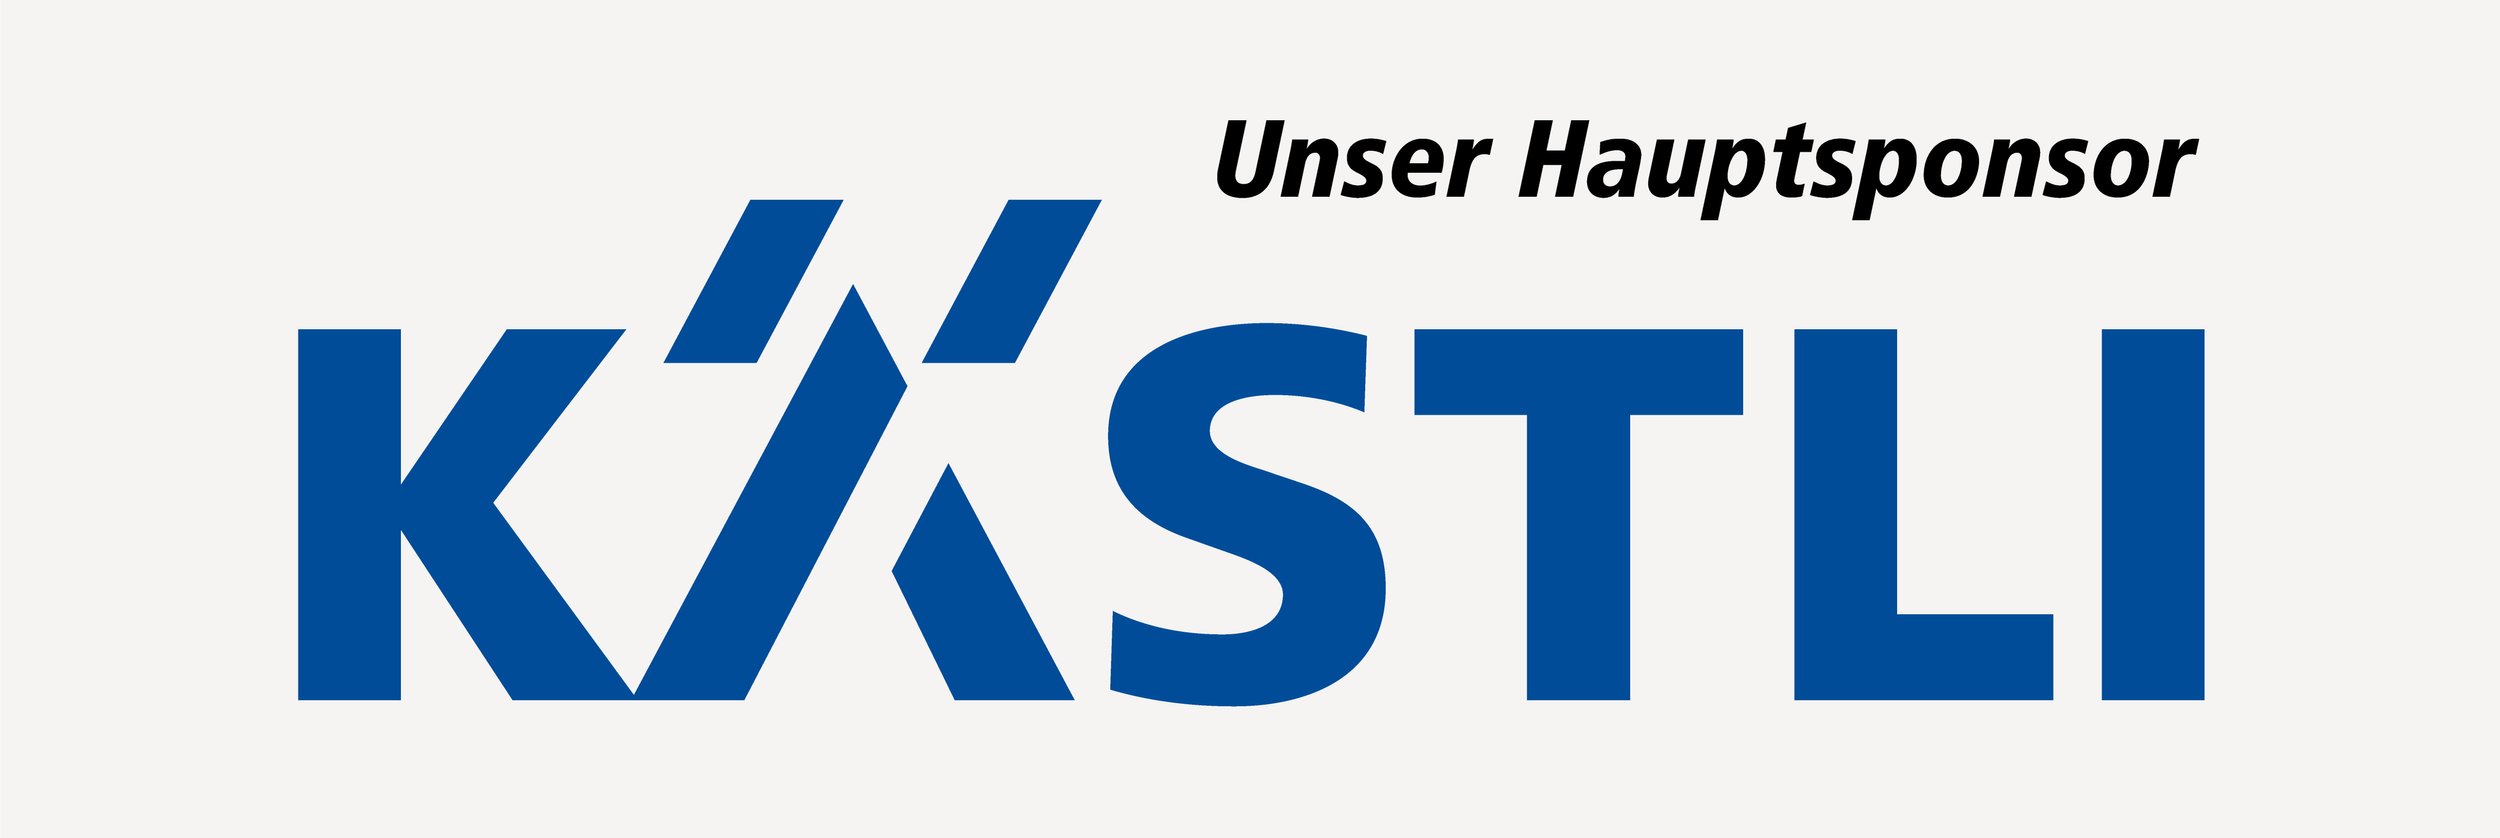 logo_kaestli_unser_hauptsponsor.jpg